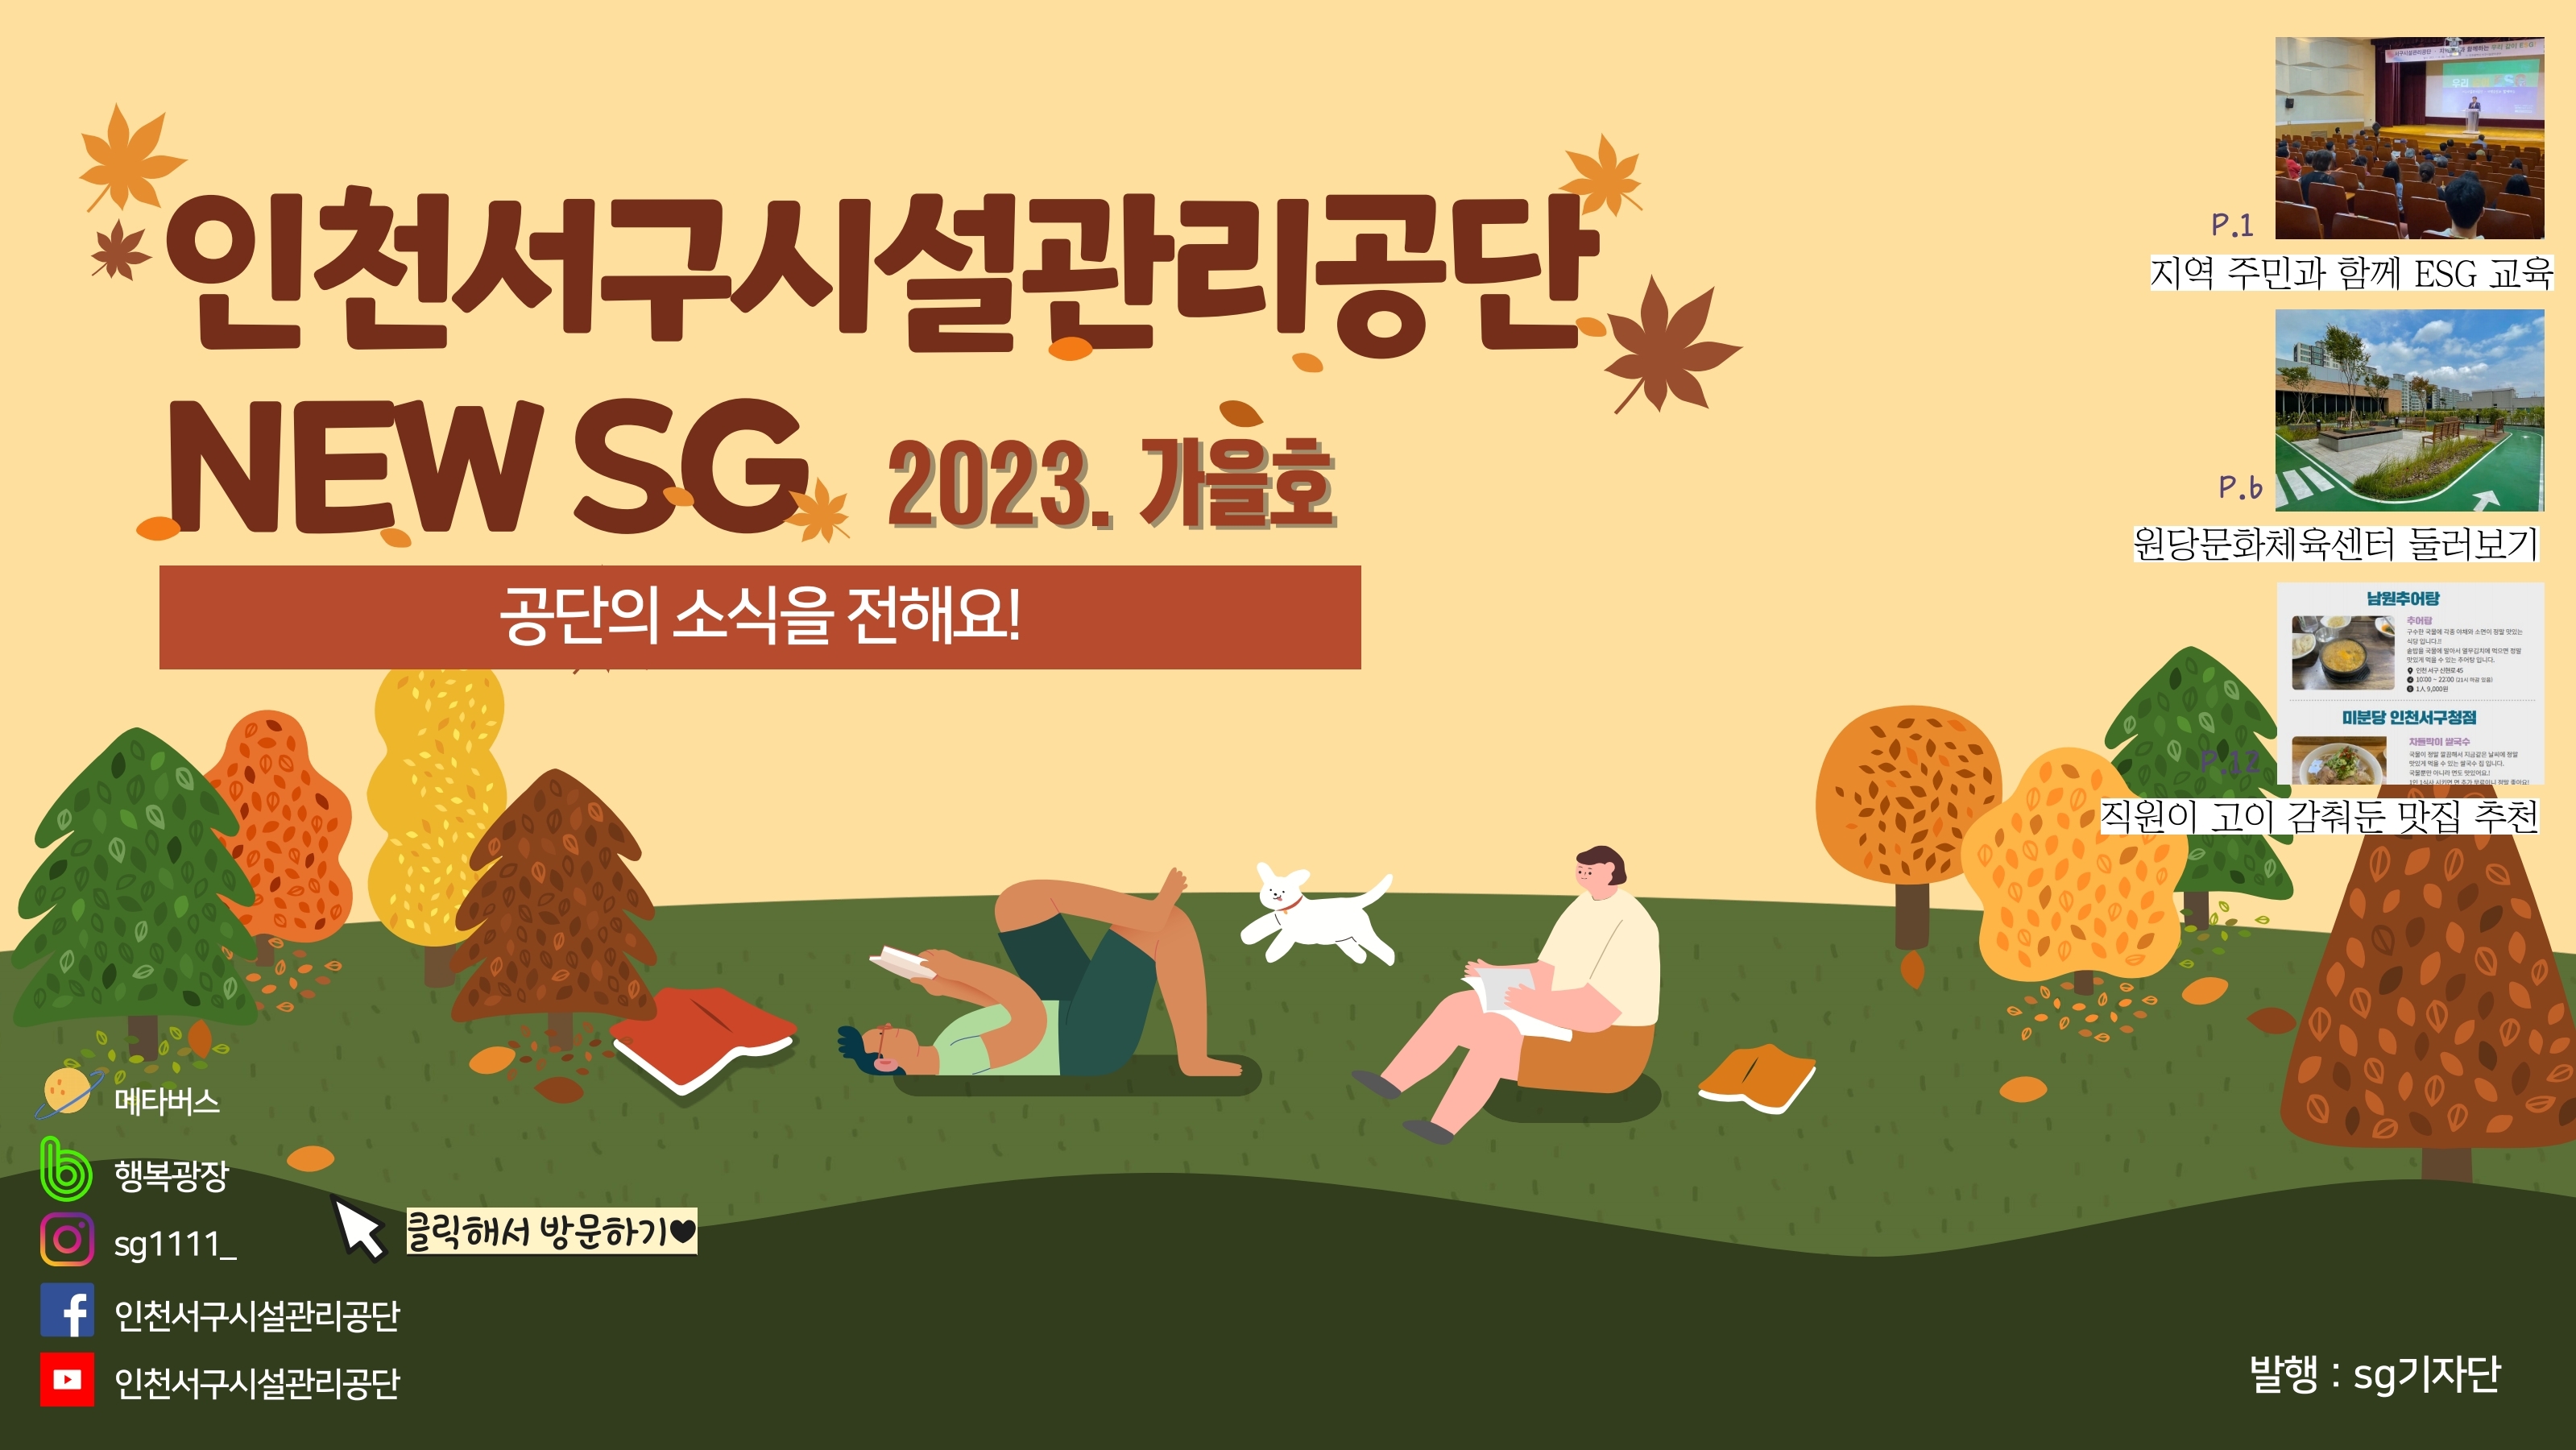 인천서구시설관리공단 NEW SG 2023. 가을호 공단의 소식을 전해요!